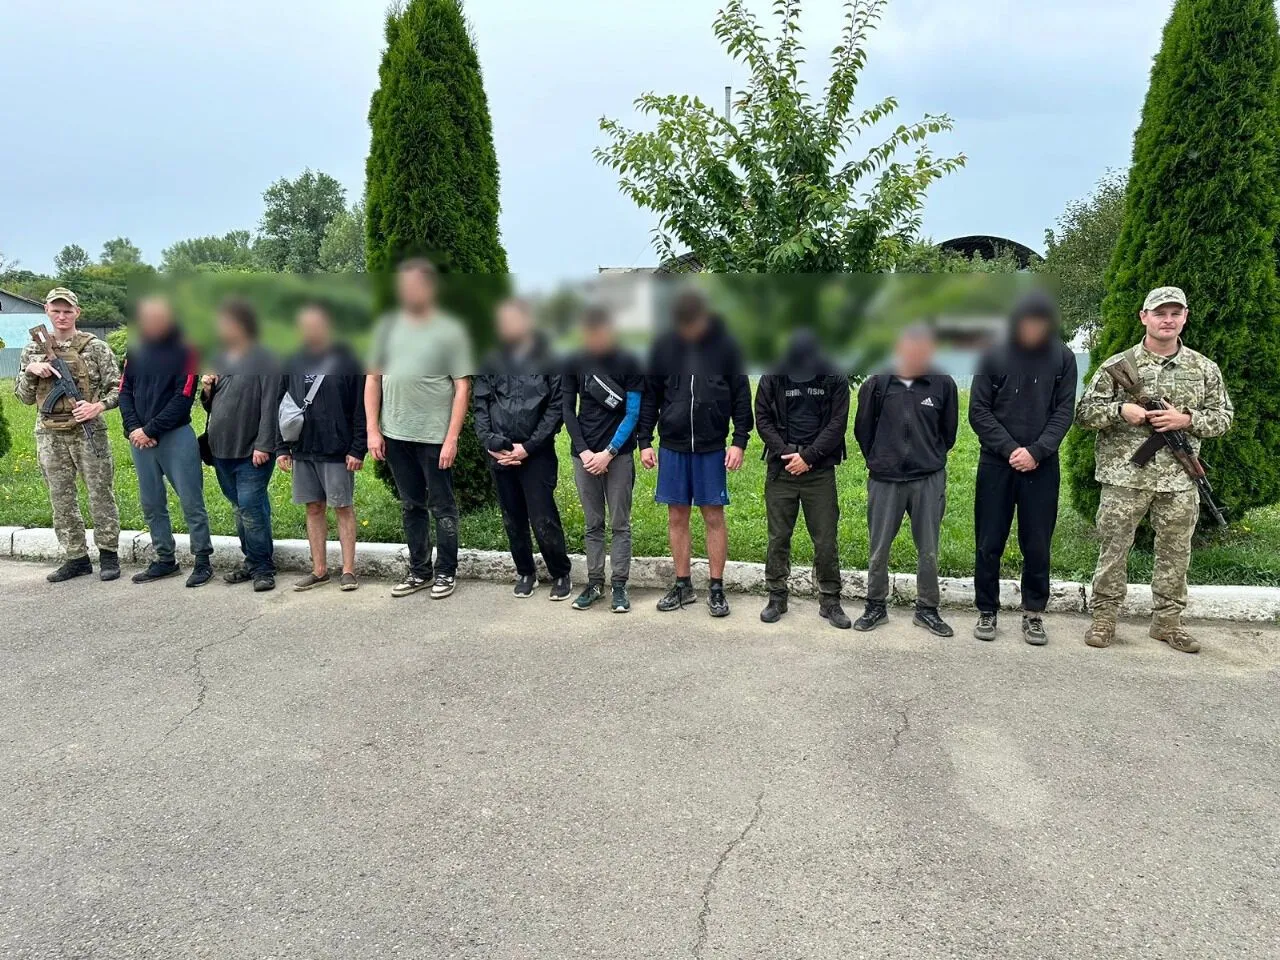 Тиса уже не в тренде: пограничники поймали десять уклонистов, которые пытались прокрасться в Венгрию по пшеничному полю. Видео